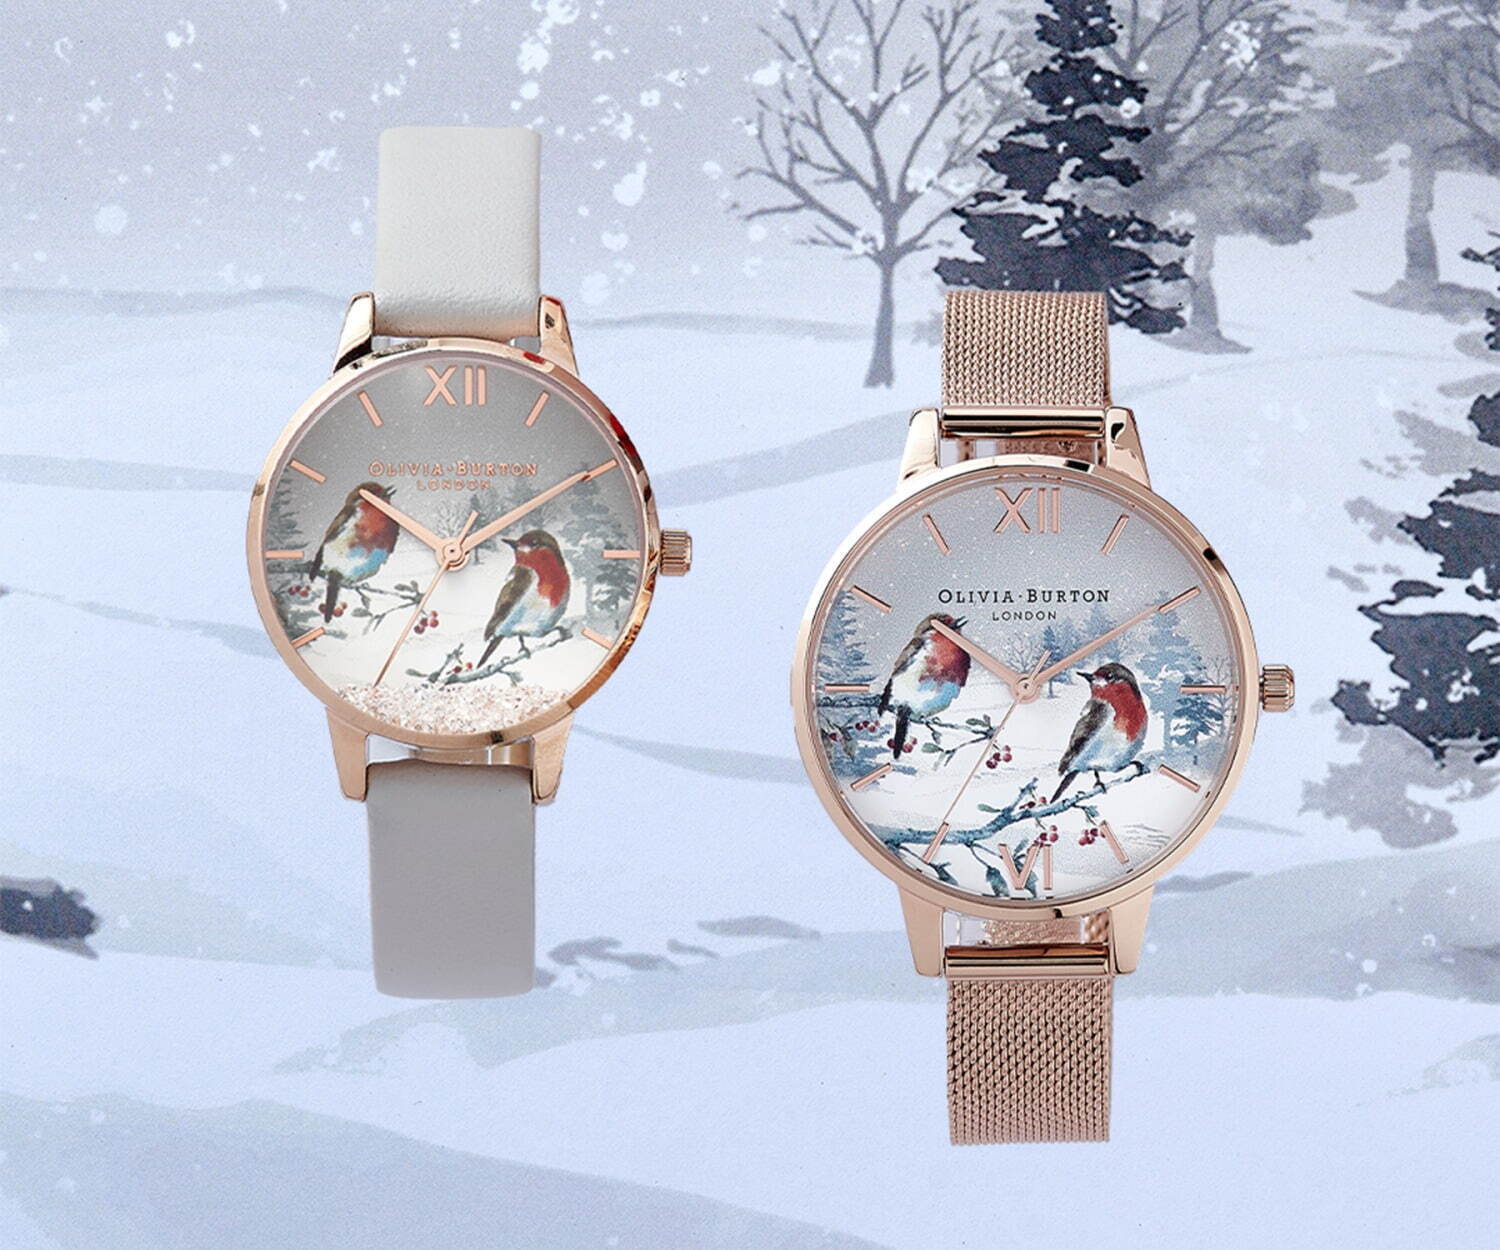 オリビア・バートンのクリスマス限定腕時計 - “鳥と柊”の雪景色を描い